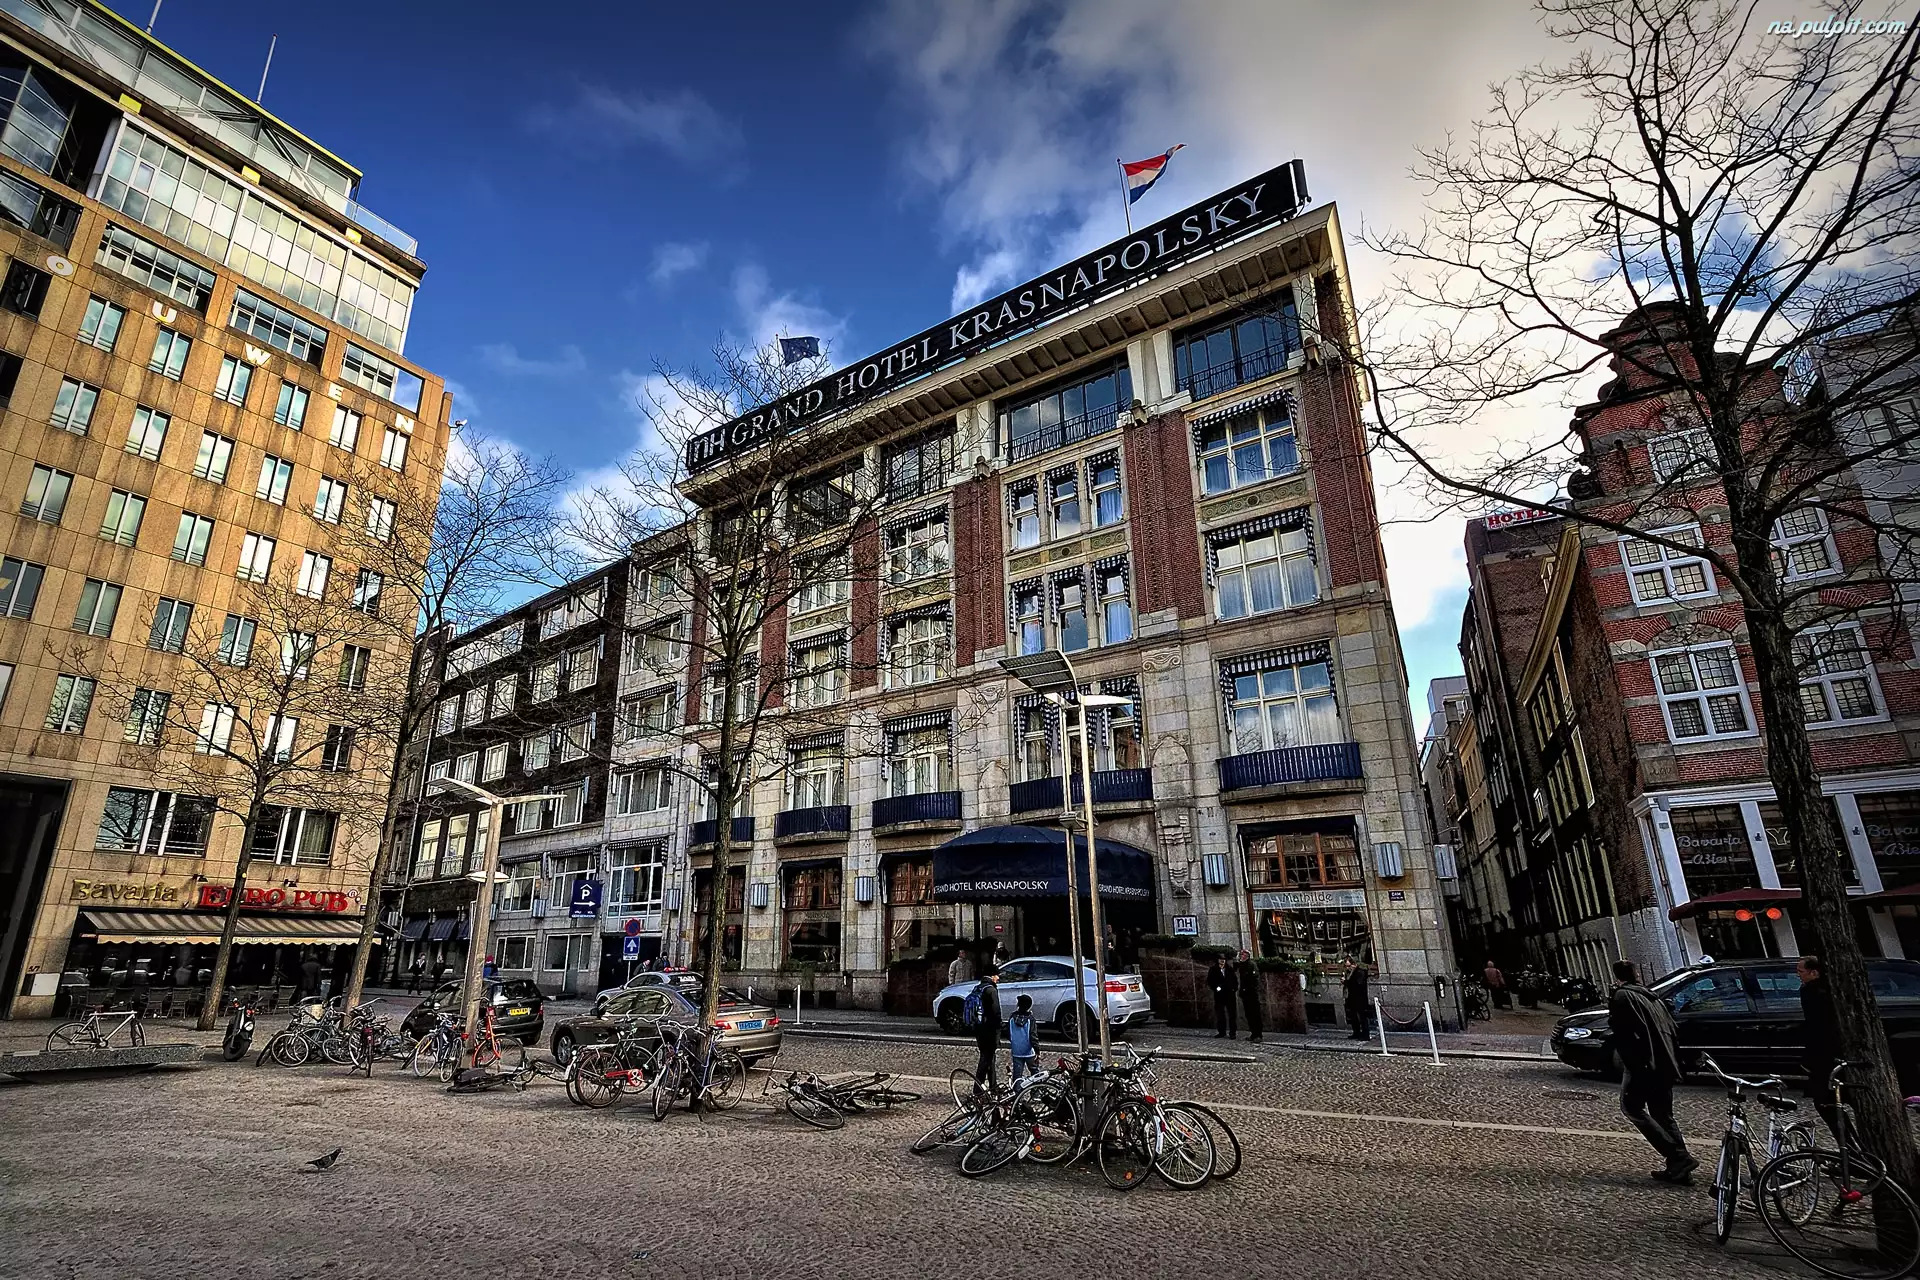 Krasnopolsky, Holandia, Amsterdam, Hotel